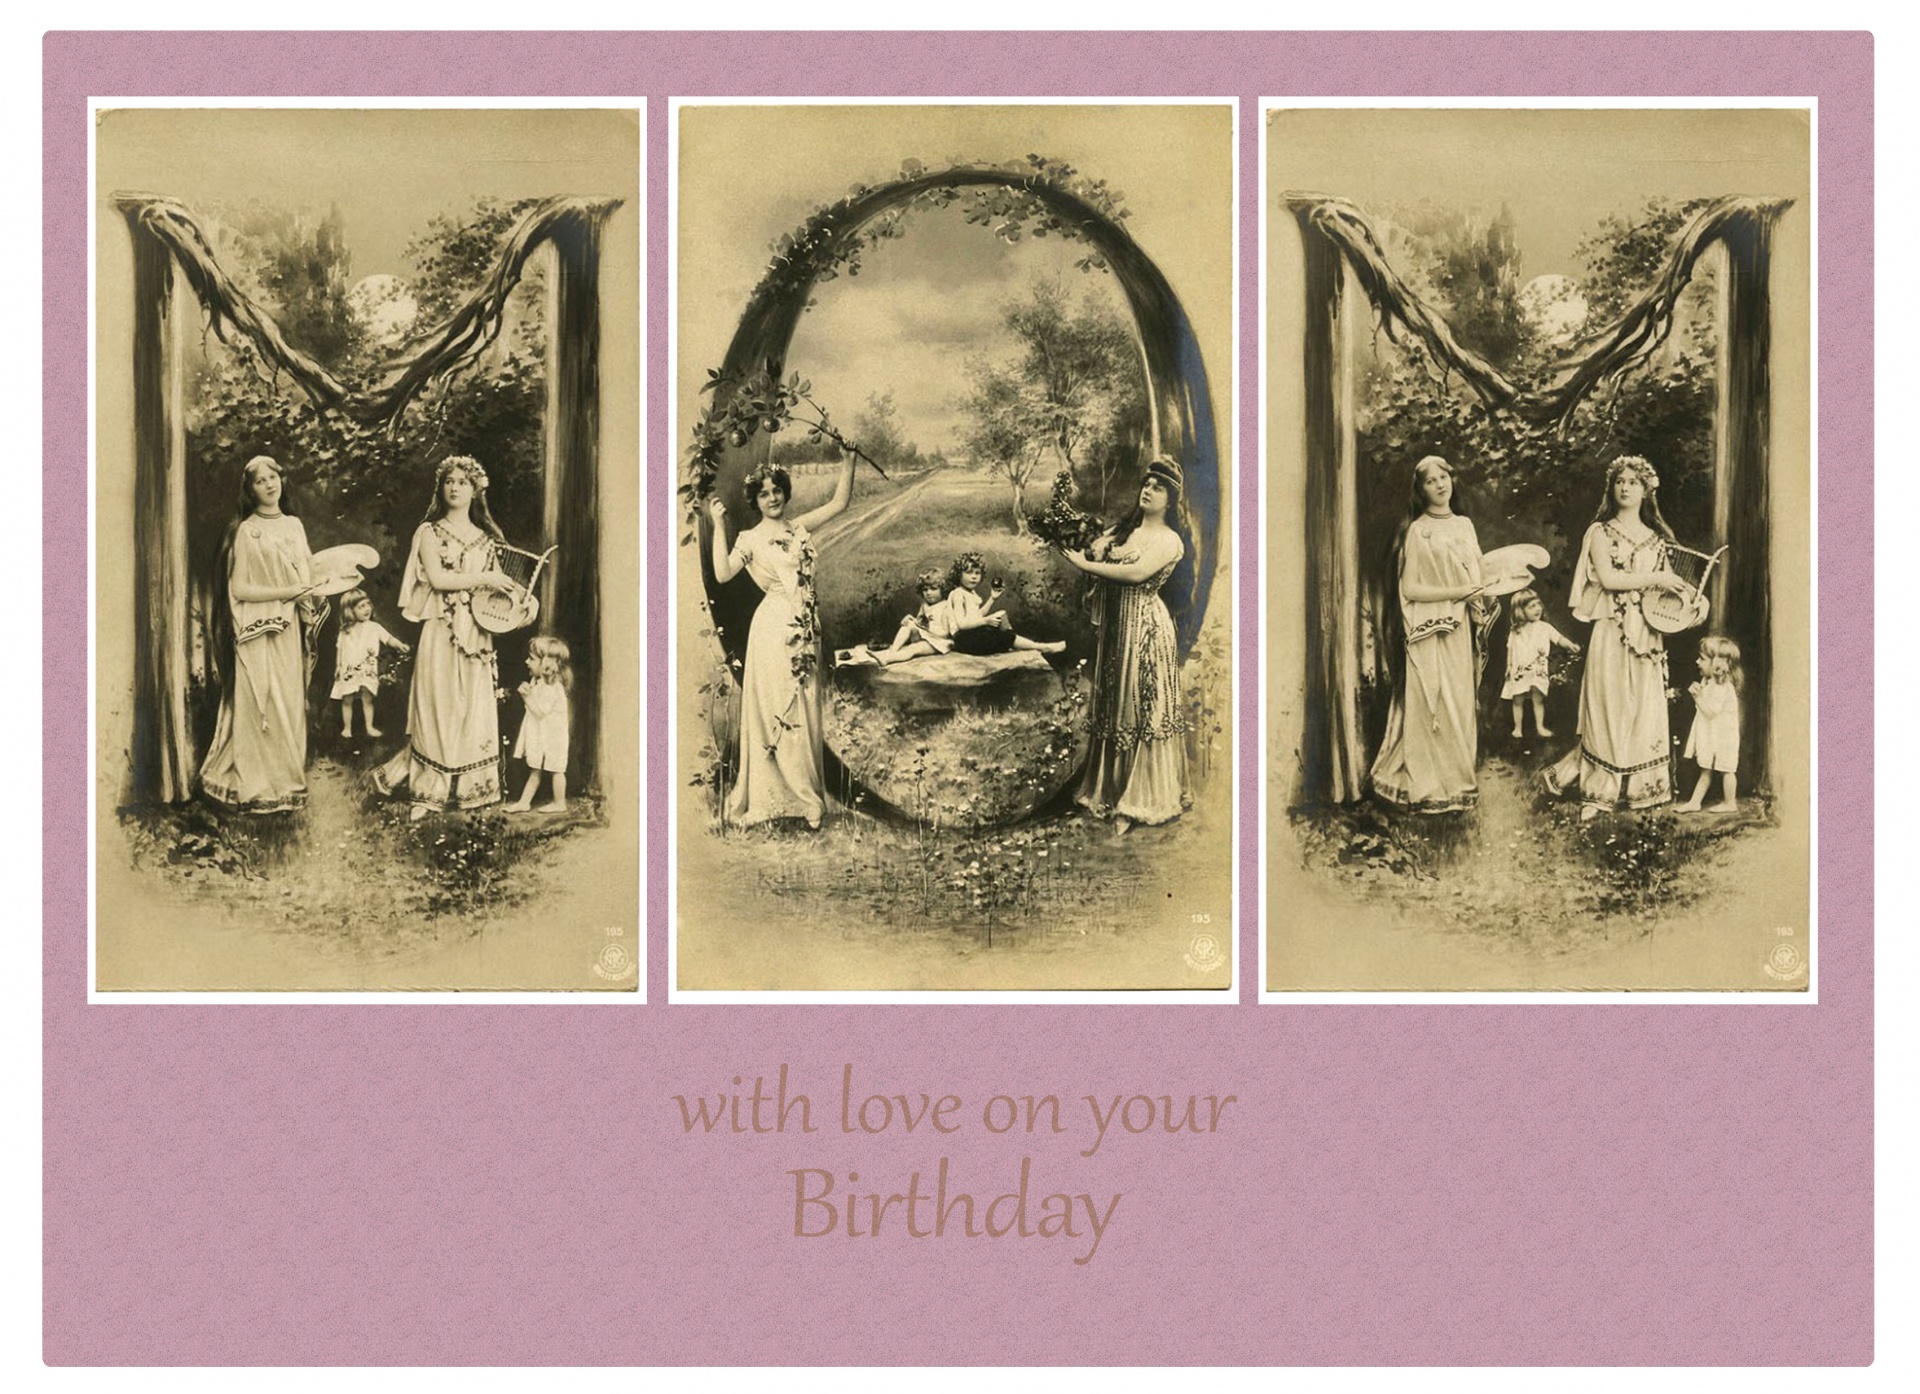 Mutter Vintage Geburtstagskarte Kostenloses Stock Bild Public Domain Pictures